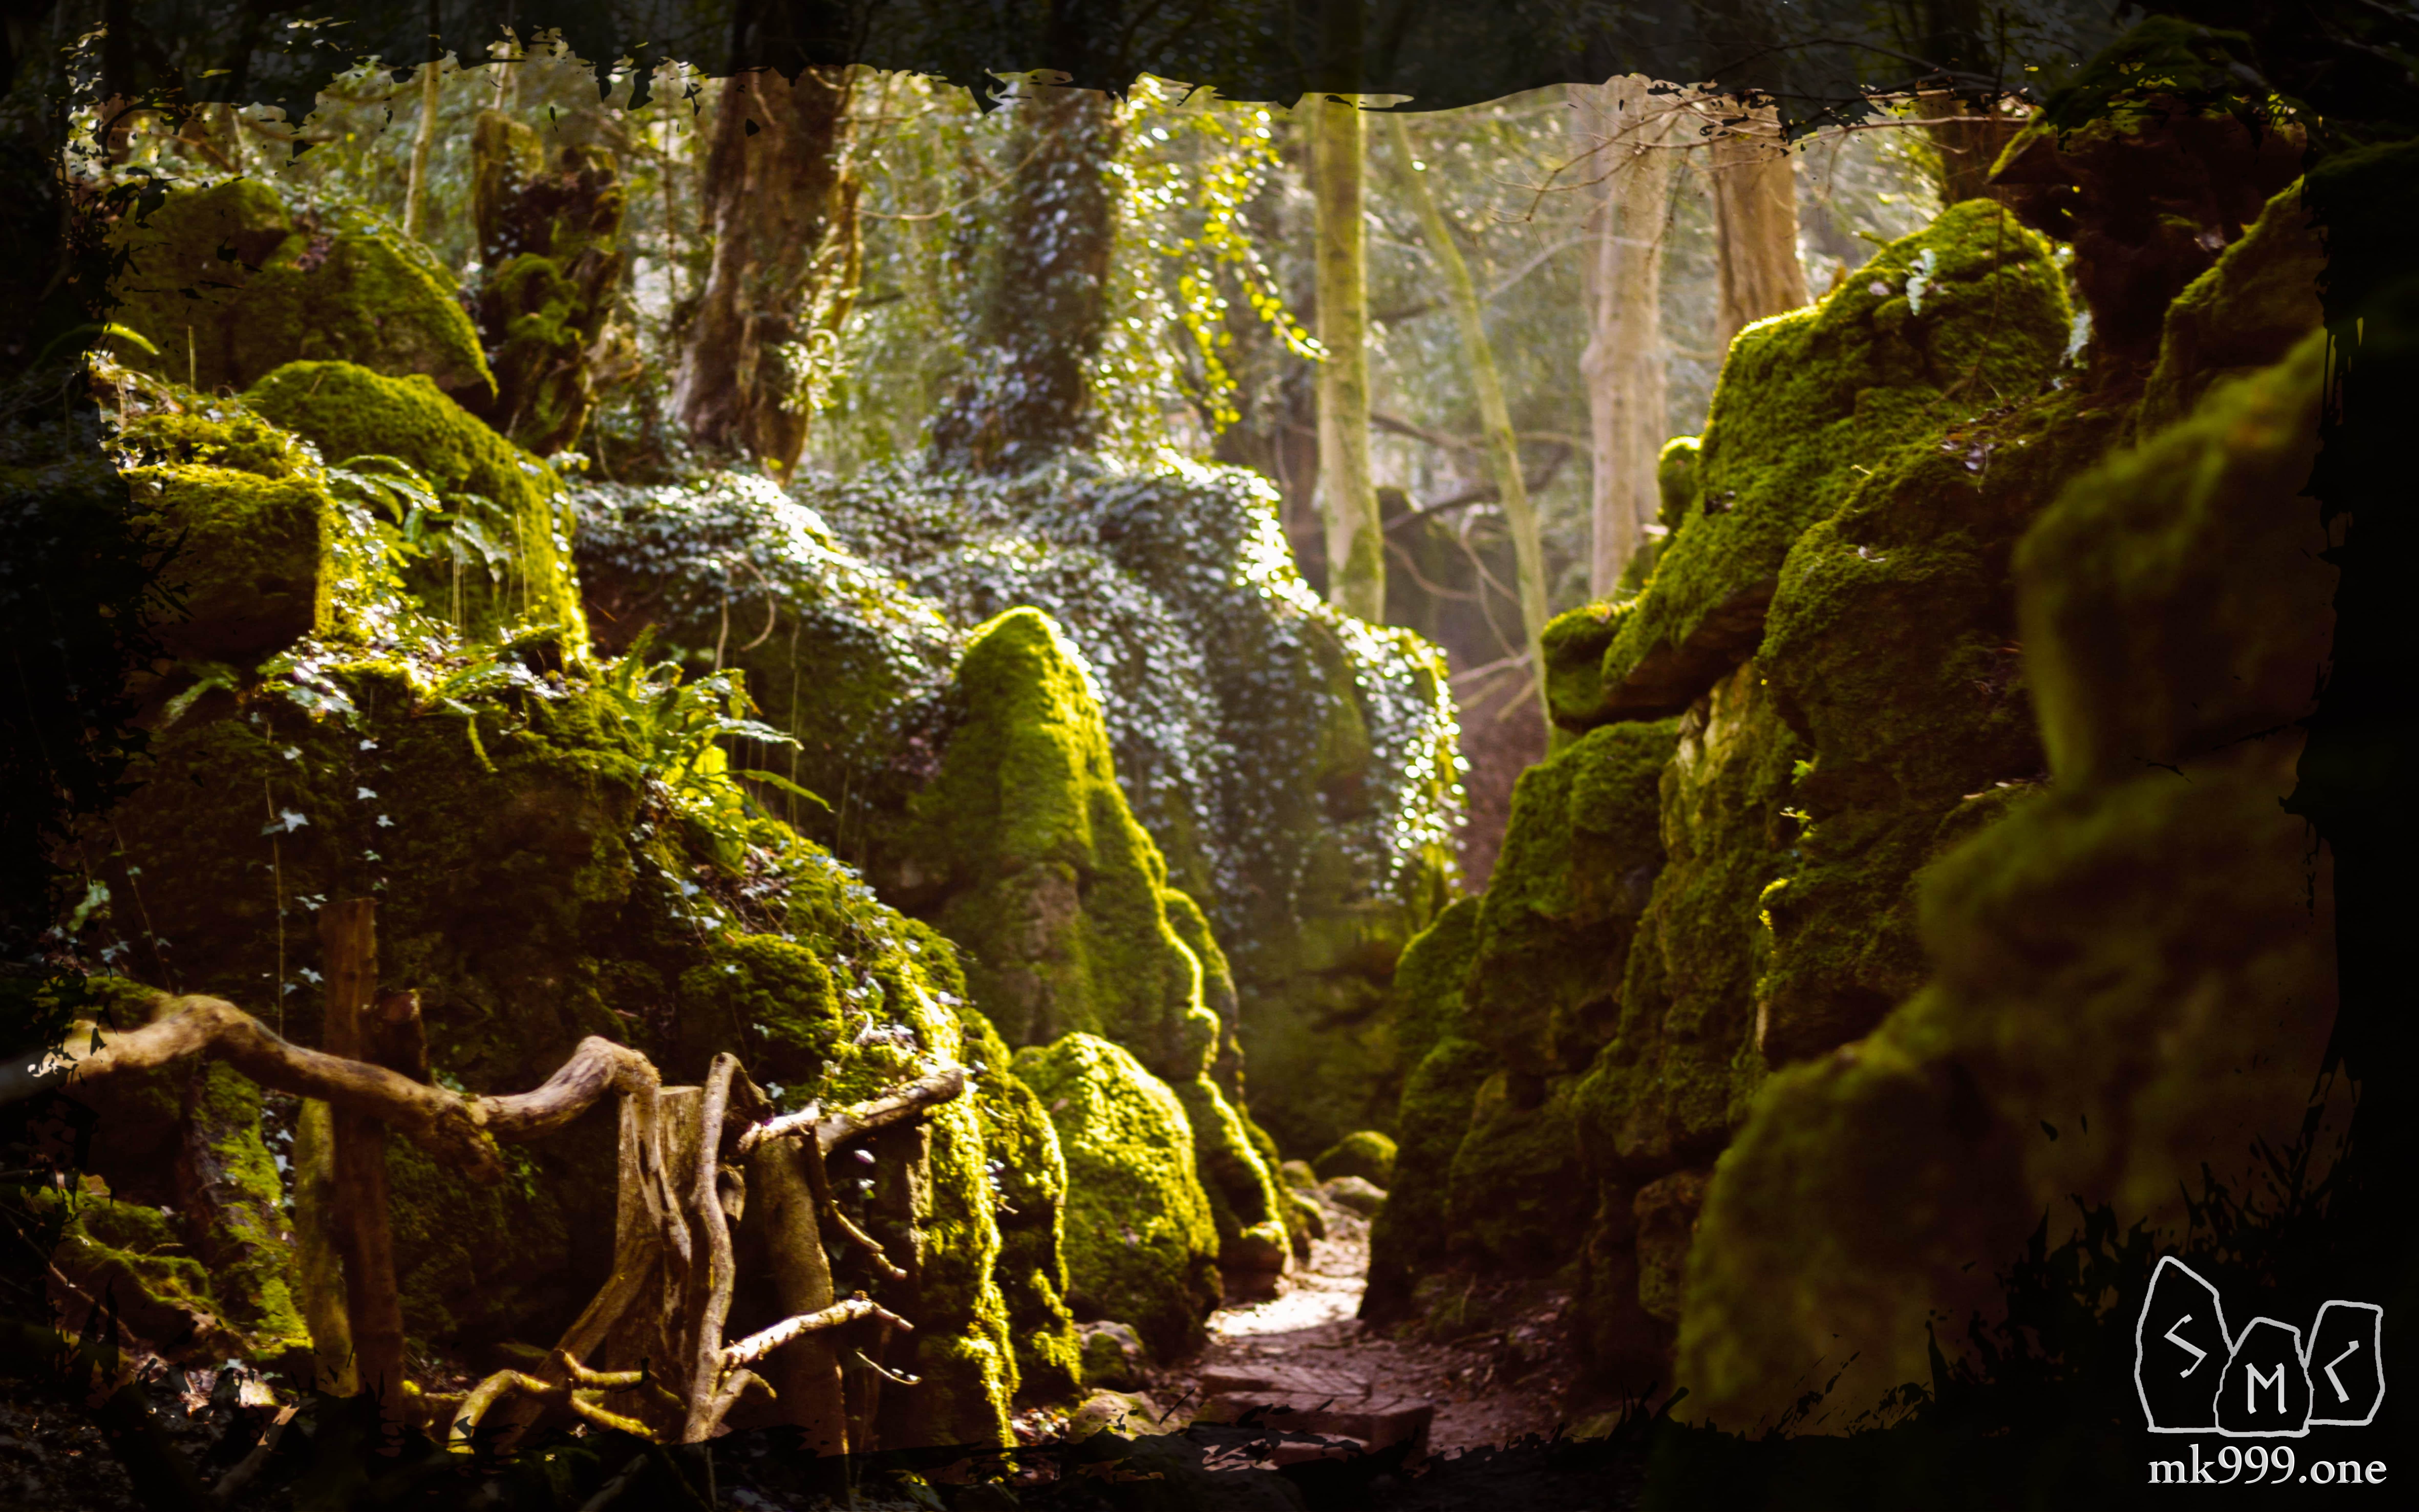 Магический лес Пазлвуд на западе Англии имеет множество тайных пещер и скальных образований, гигантский лабиринт с замысловатыми путями